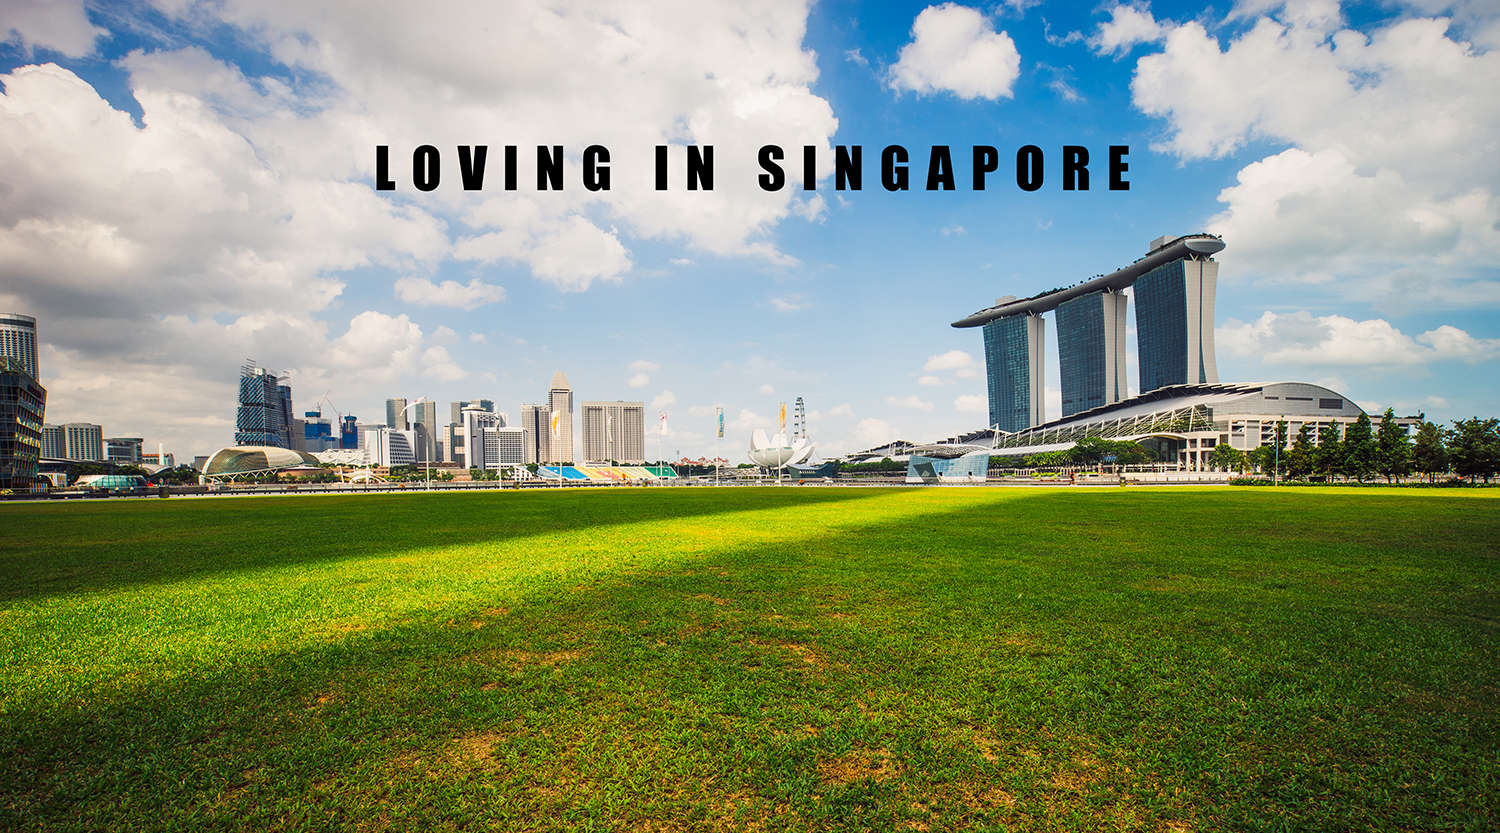 LOVING IN SINGAPORE